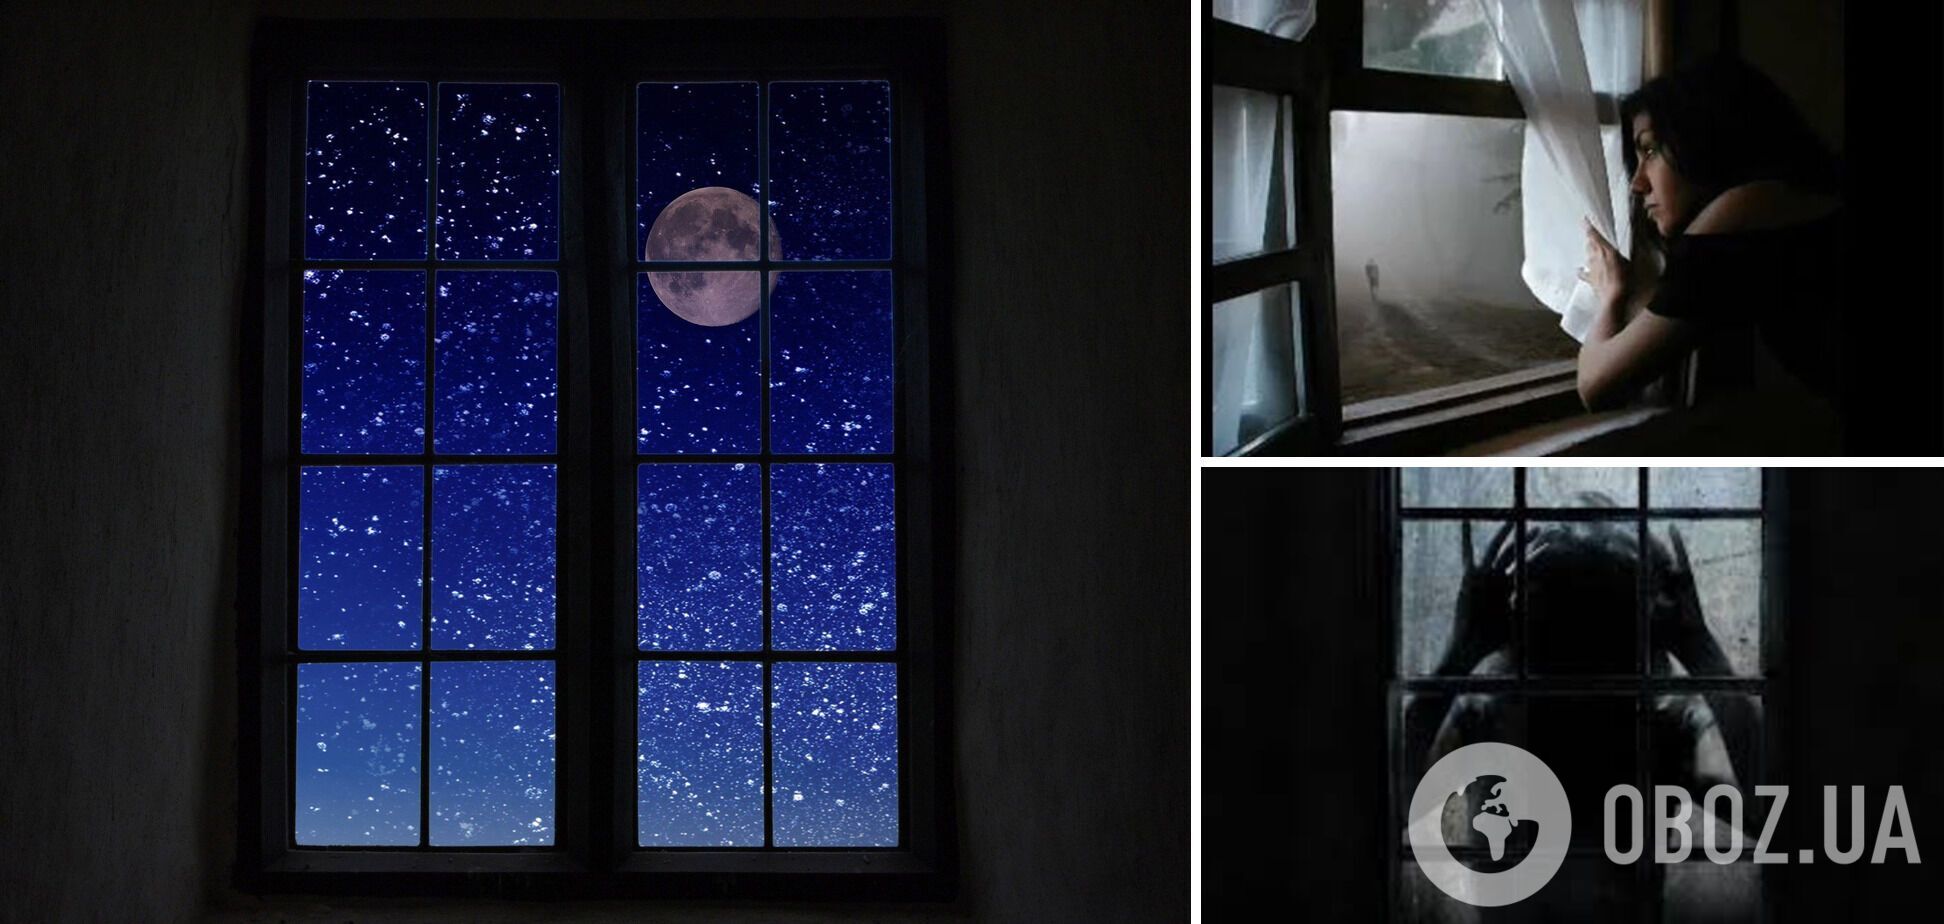 Почему нельзя смотреть в окно ночью: как объясняли суеверие предки